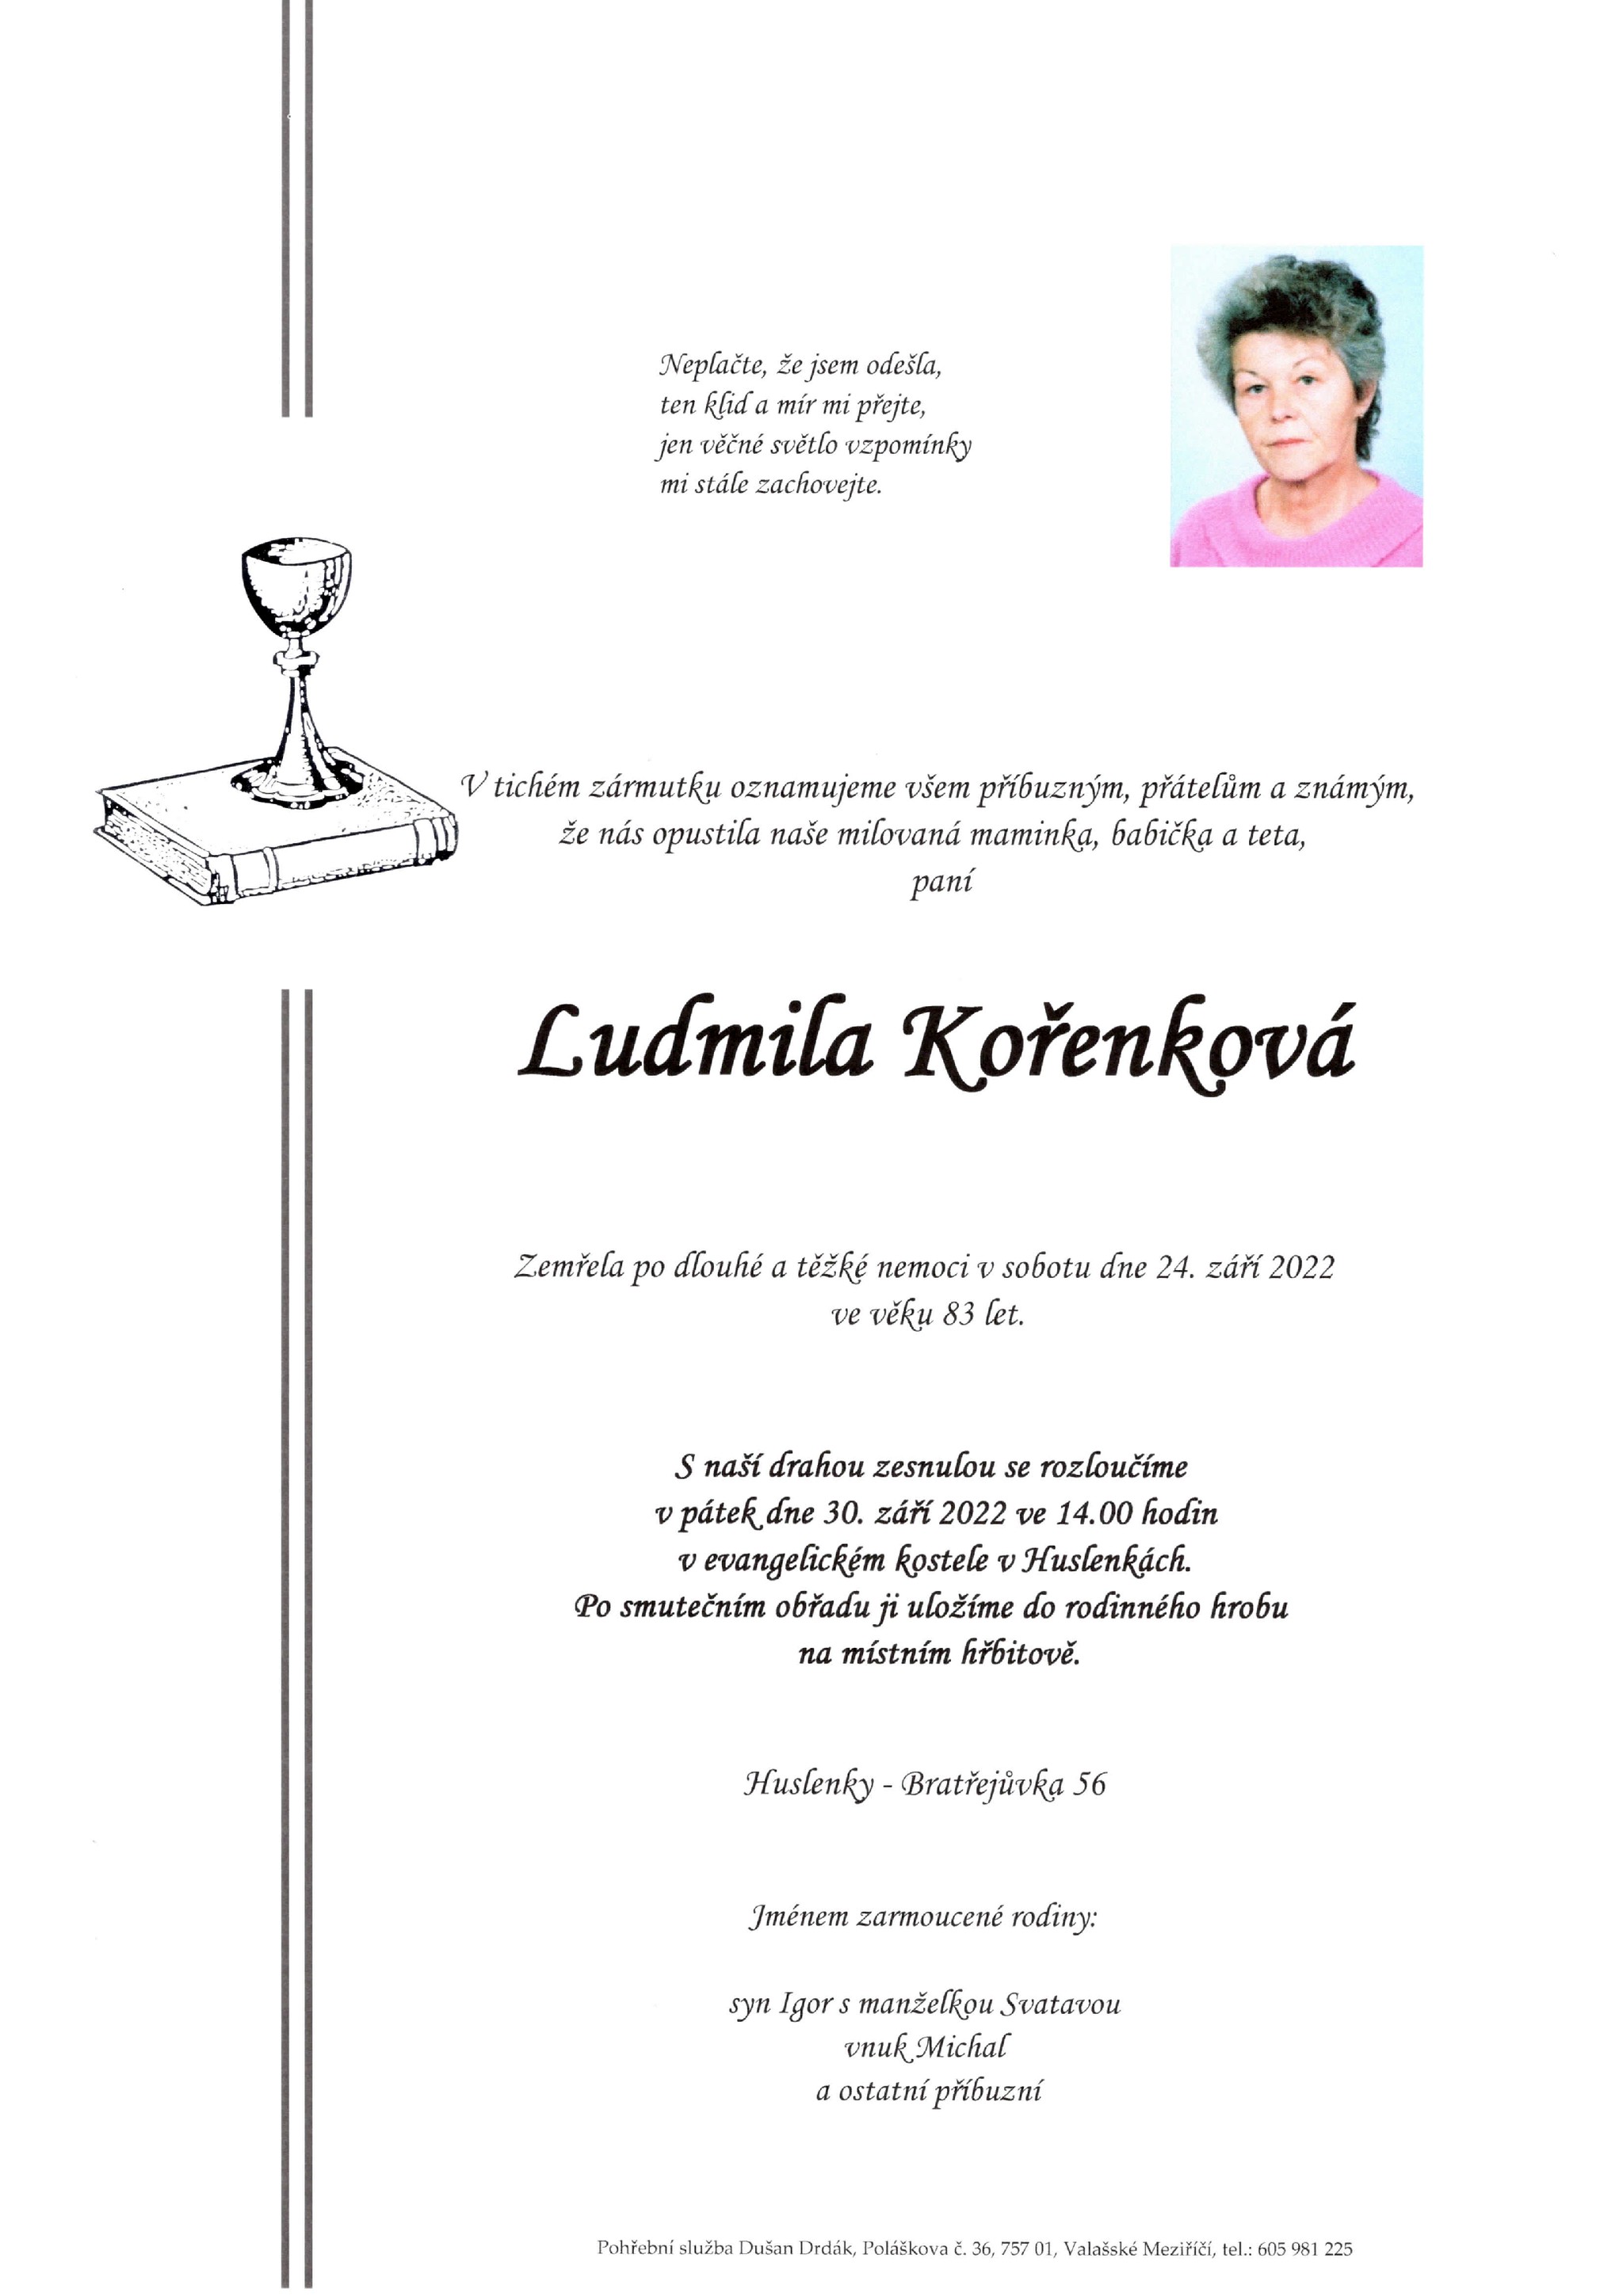 Ludmila Kořenková